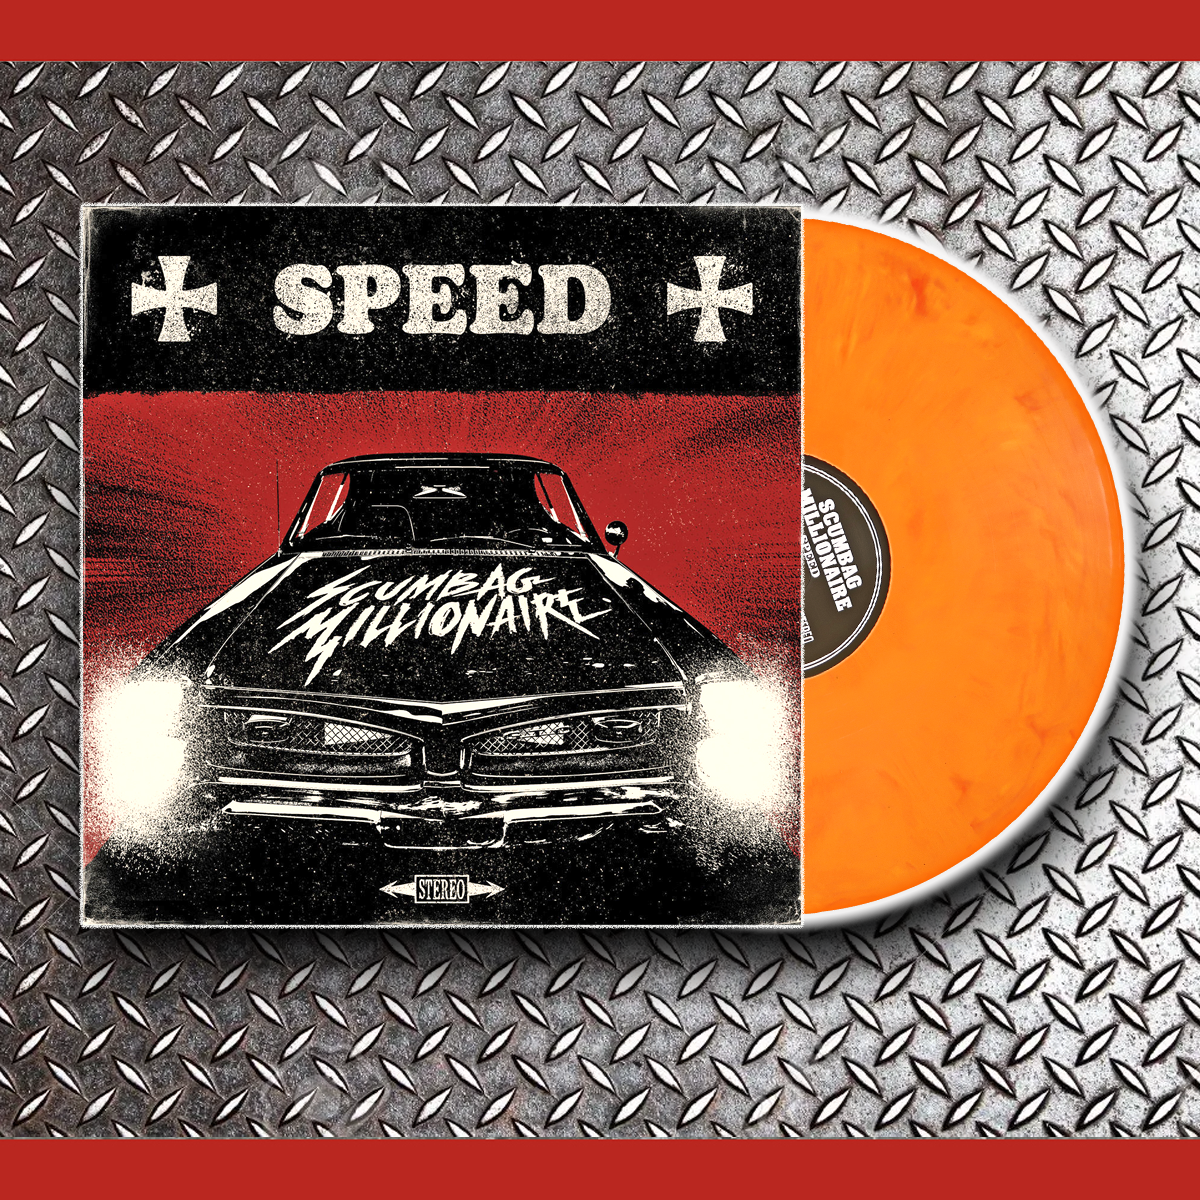 Scumbag Millionaire- Speed LP ~RARE FLAMING NEON ORANGE WAX!